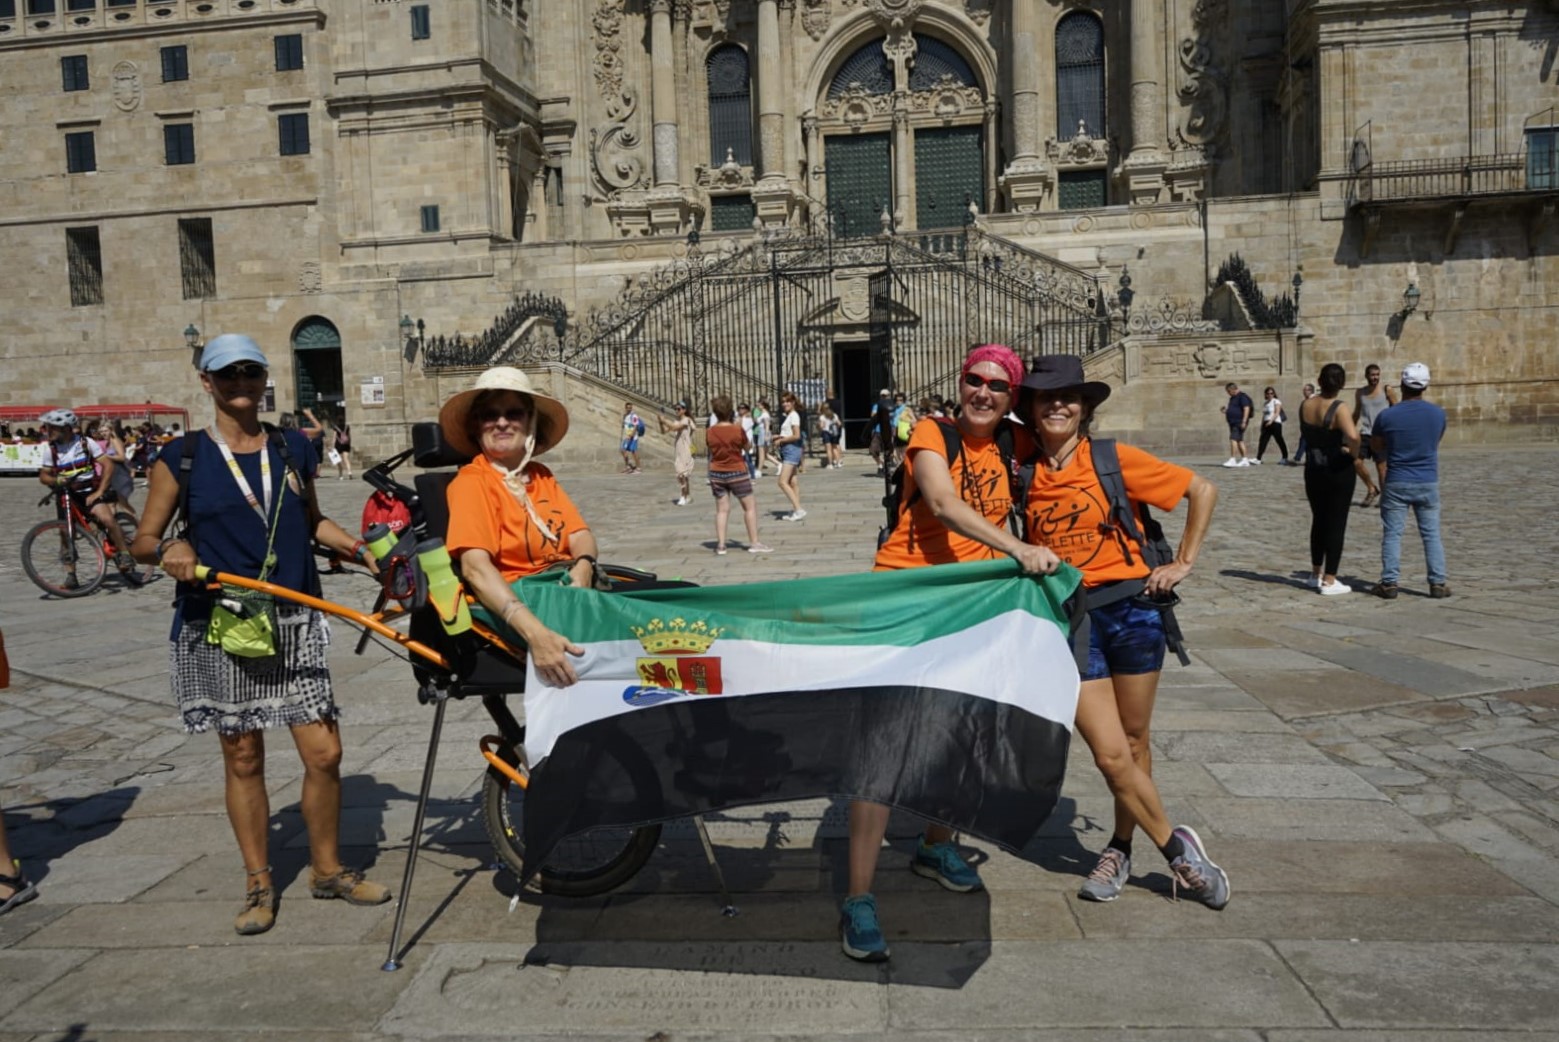 En la imagen se puede ver a Yolanda Álvarez, en la plaza del Obradoiro, frente a la Catedral de Santiago de Compostela. Está montada en una silla Joëlette y posa, exhibiendo la bandera de Extremadura (su tierra), junto a una parte del equipo de pilotos que hicieron posible su Camino de Santiago.